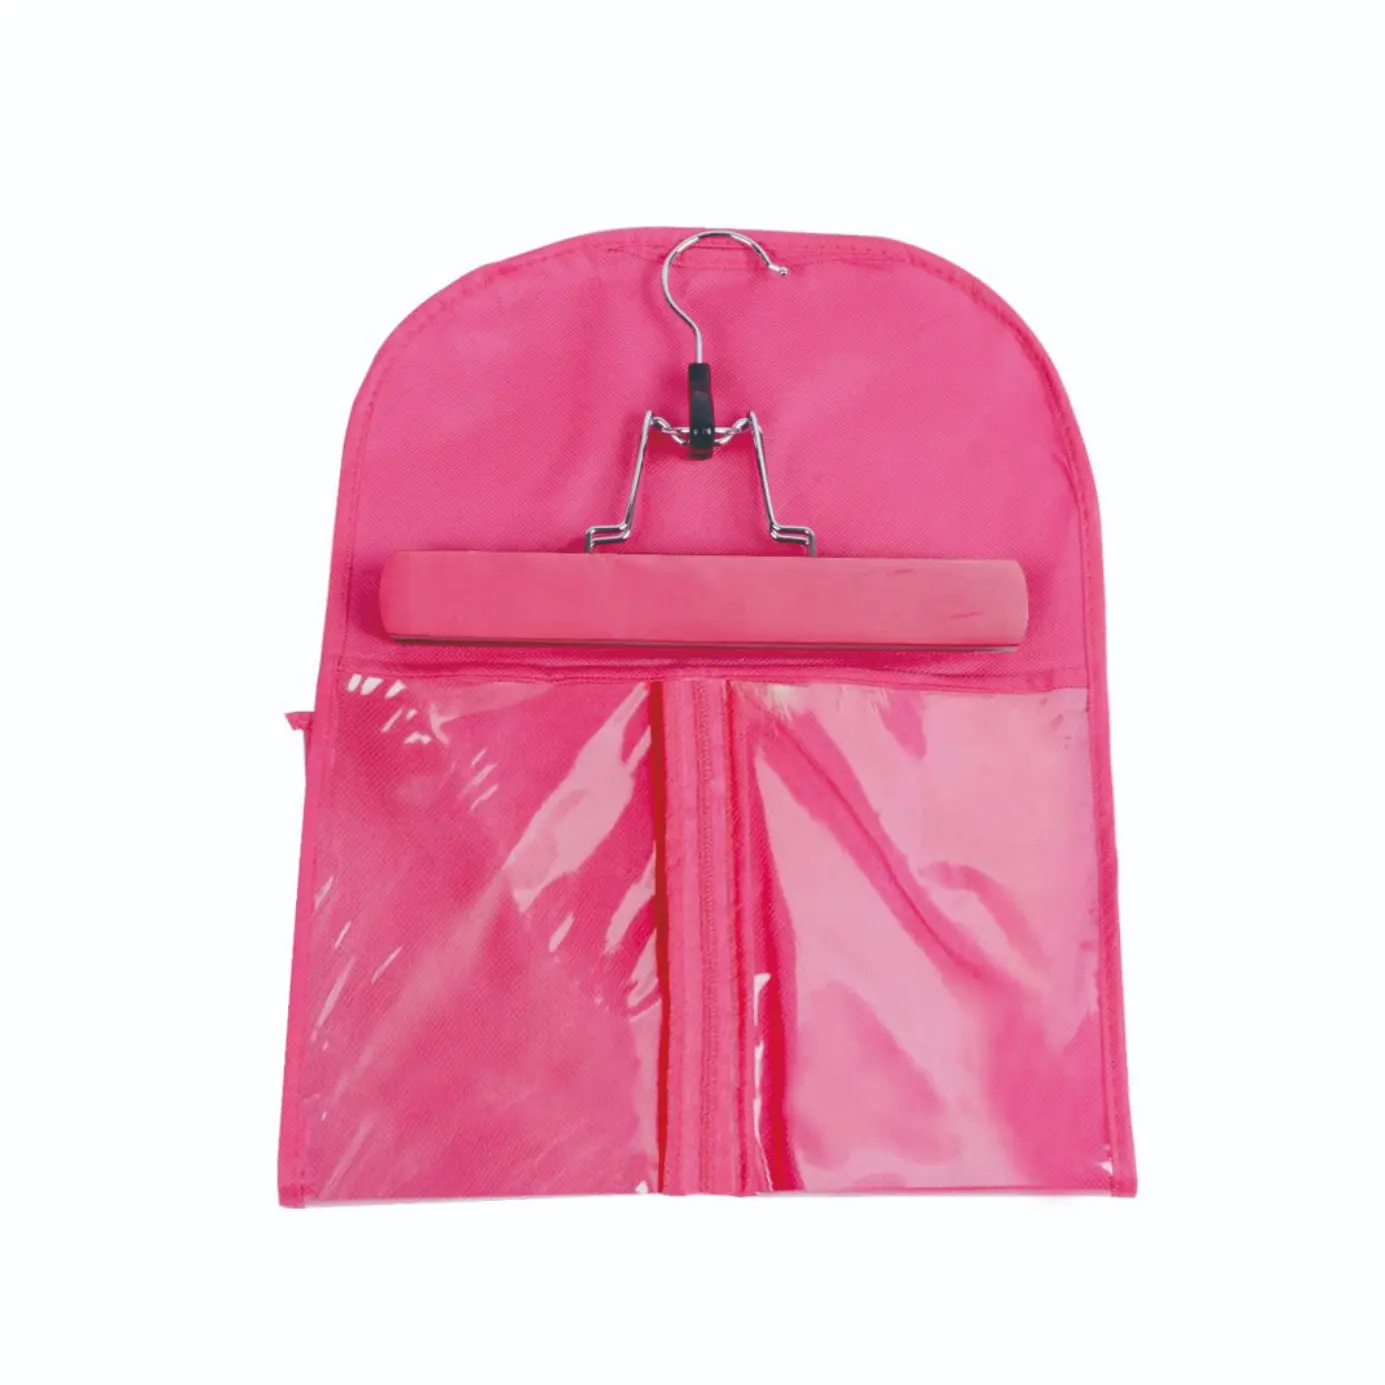 행거와 헤어 포장 가발 보관 가방에 대 한 다채로운 가방 도매